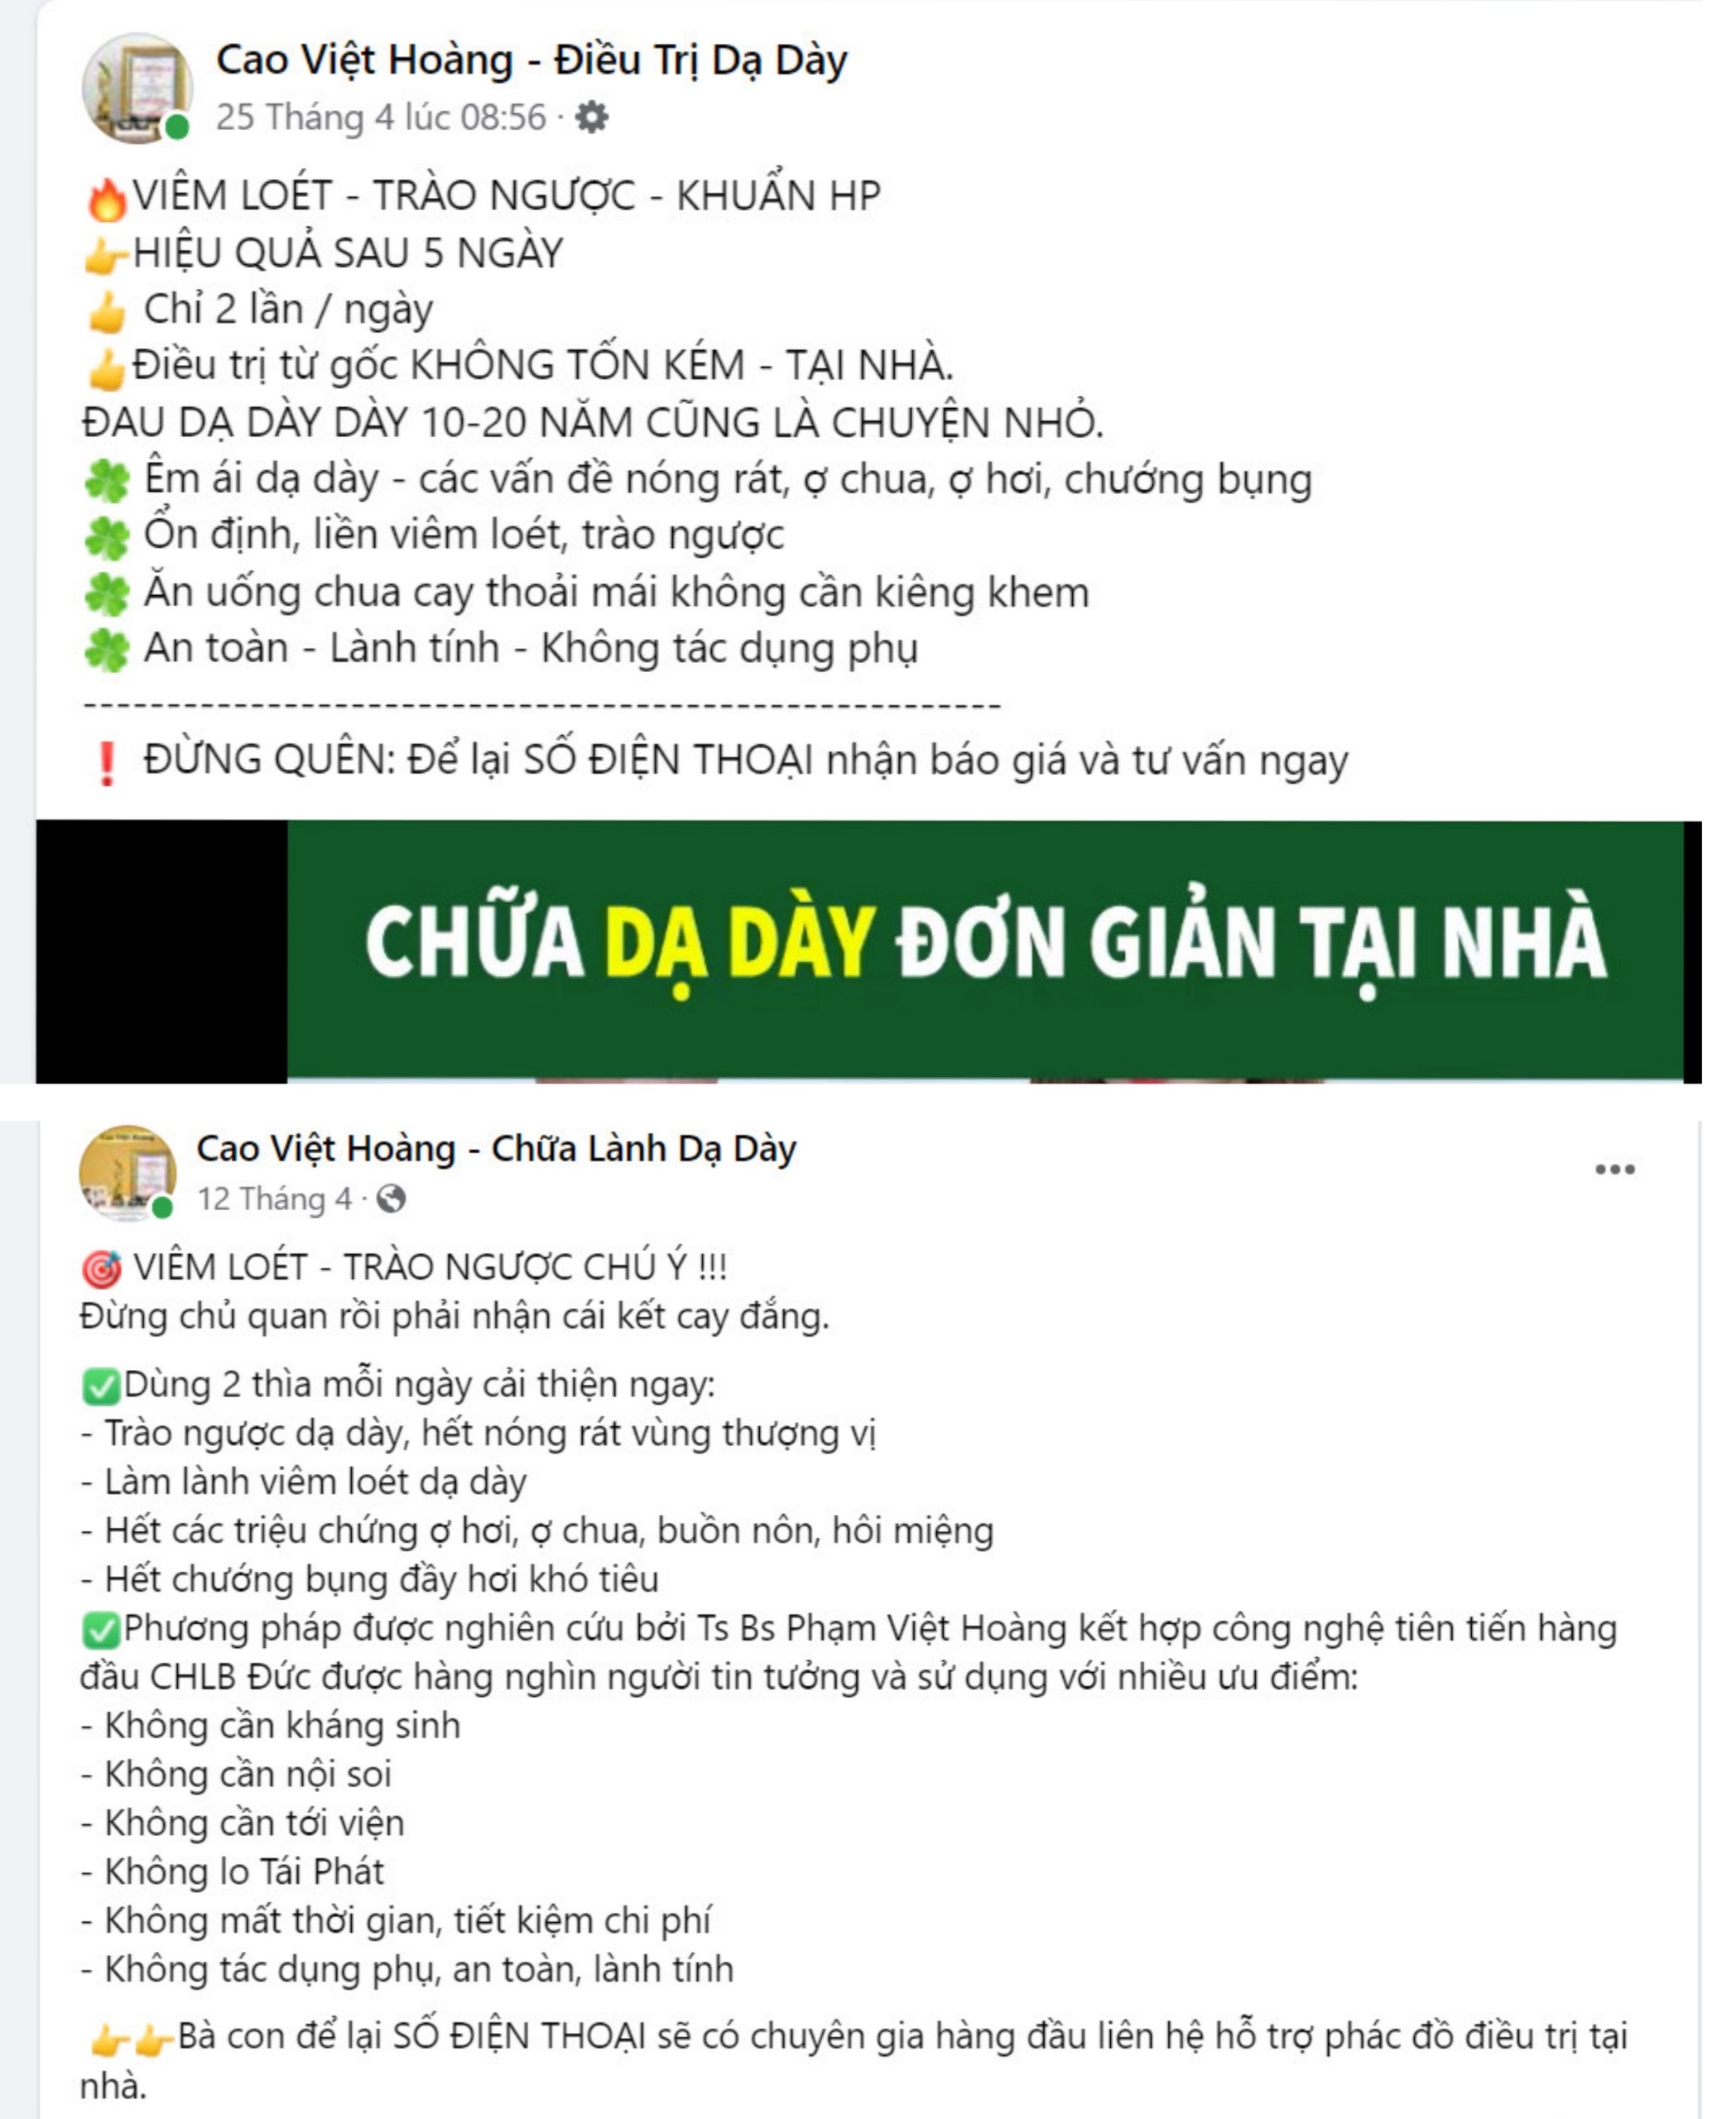 Nhiều fanpage quảng cáo Cao Việt Hoàng trái quy định pháp luật. (Ảnh: VietQ.vn)